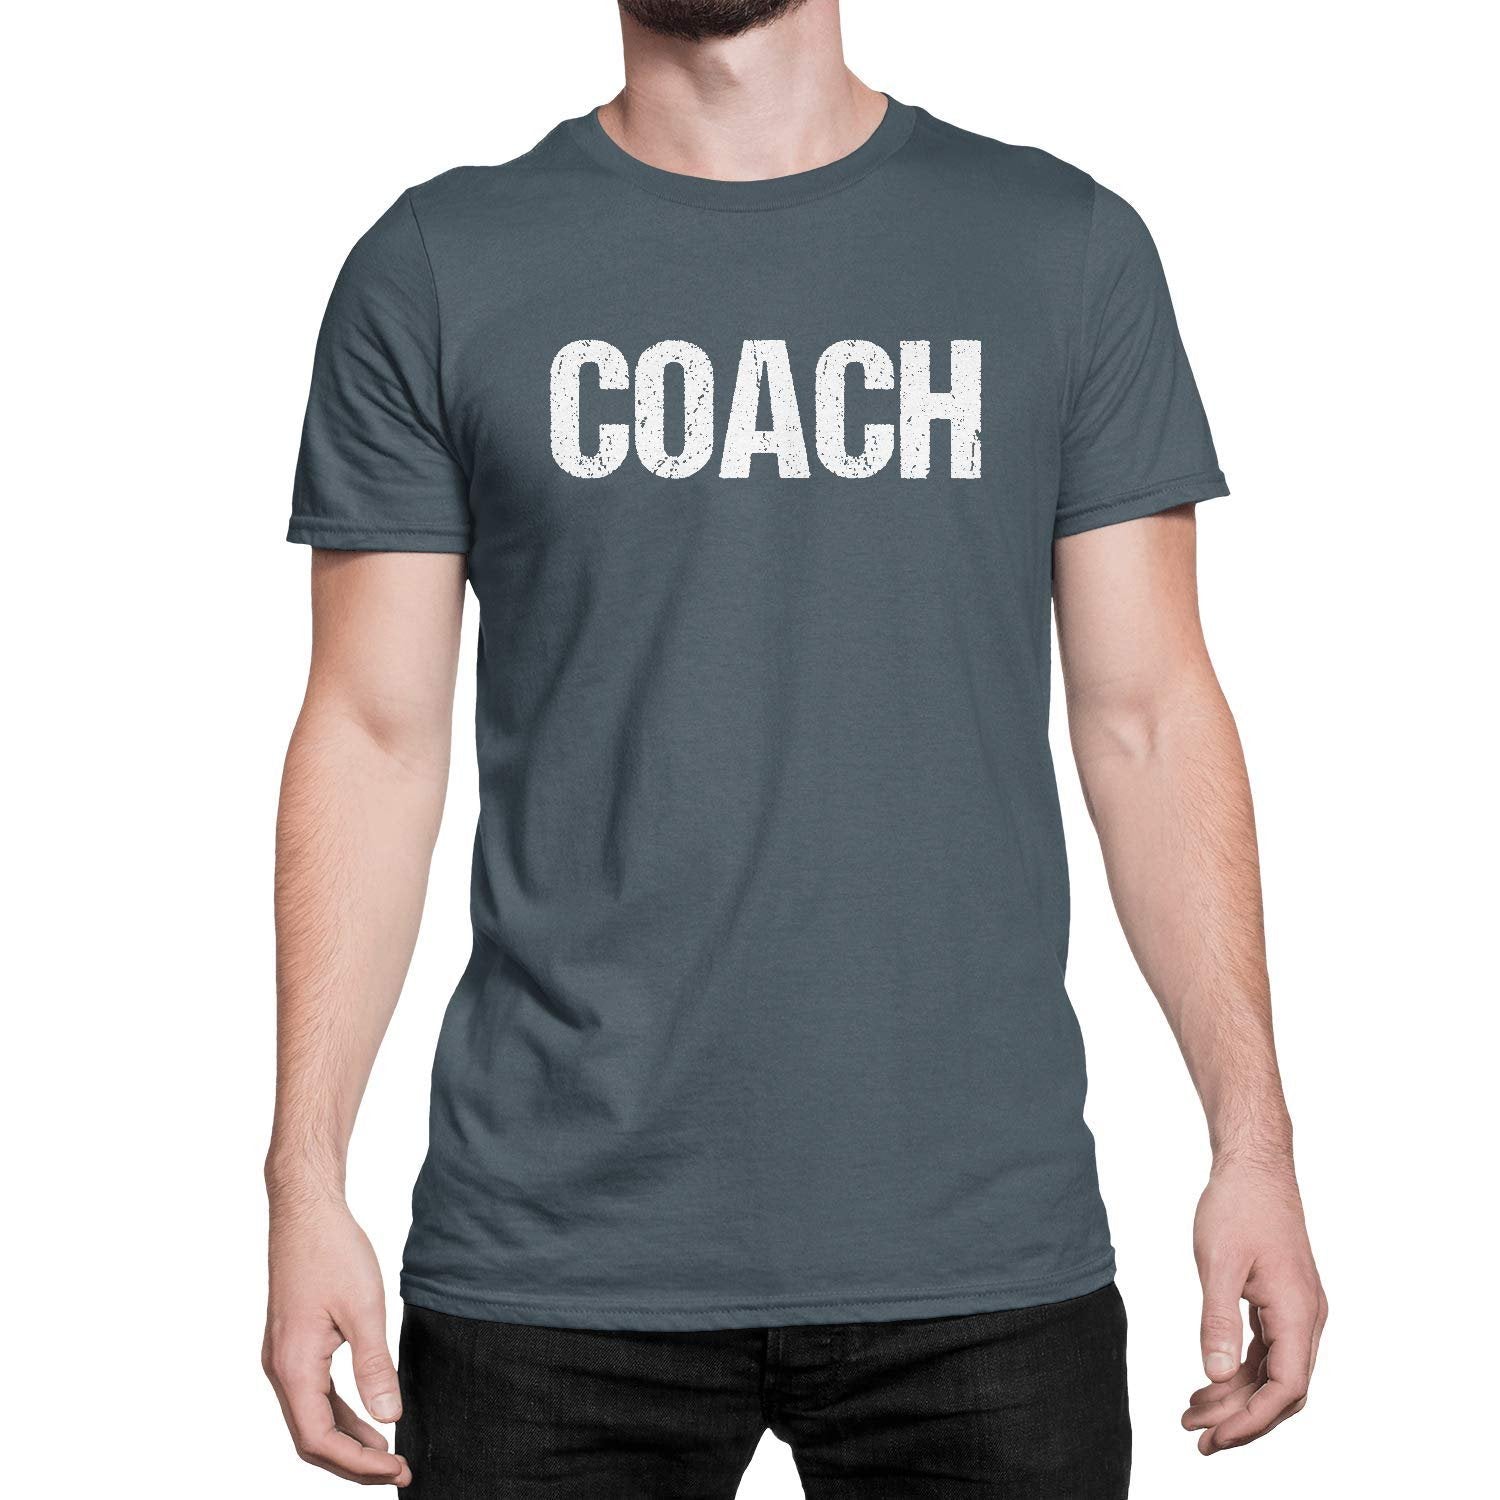 Coach T-Shirt Sports Coaching Tee Shirt (Charcoal & White, Distressed)